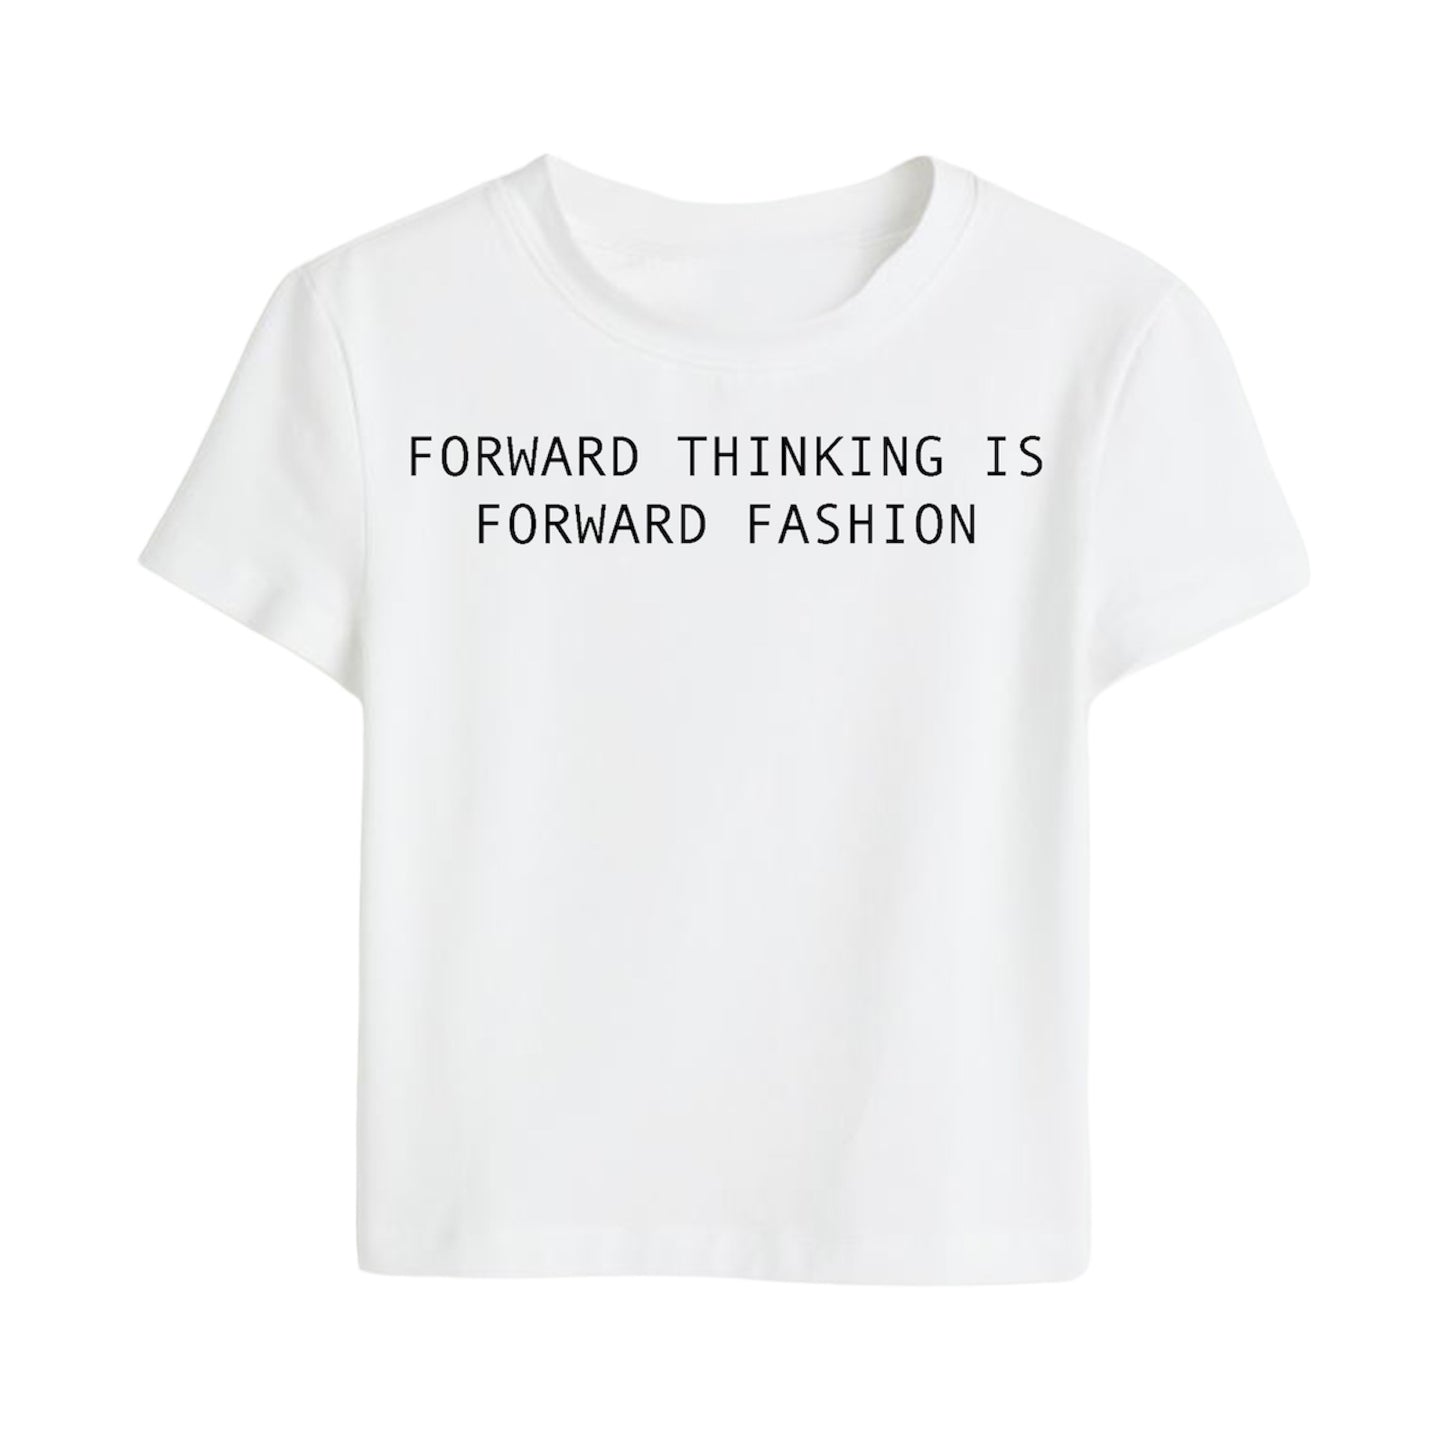 “Forward Thinking Is Forward Fashion”